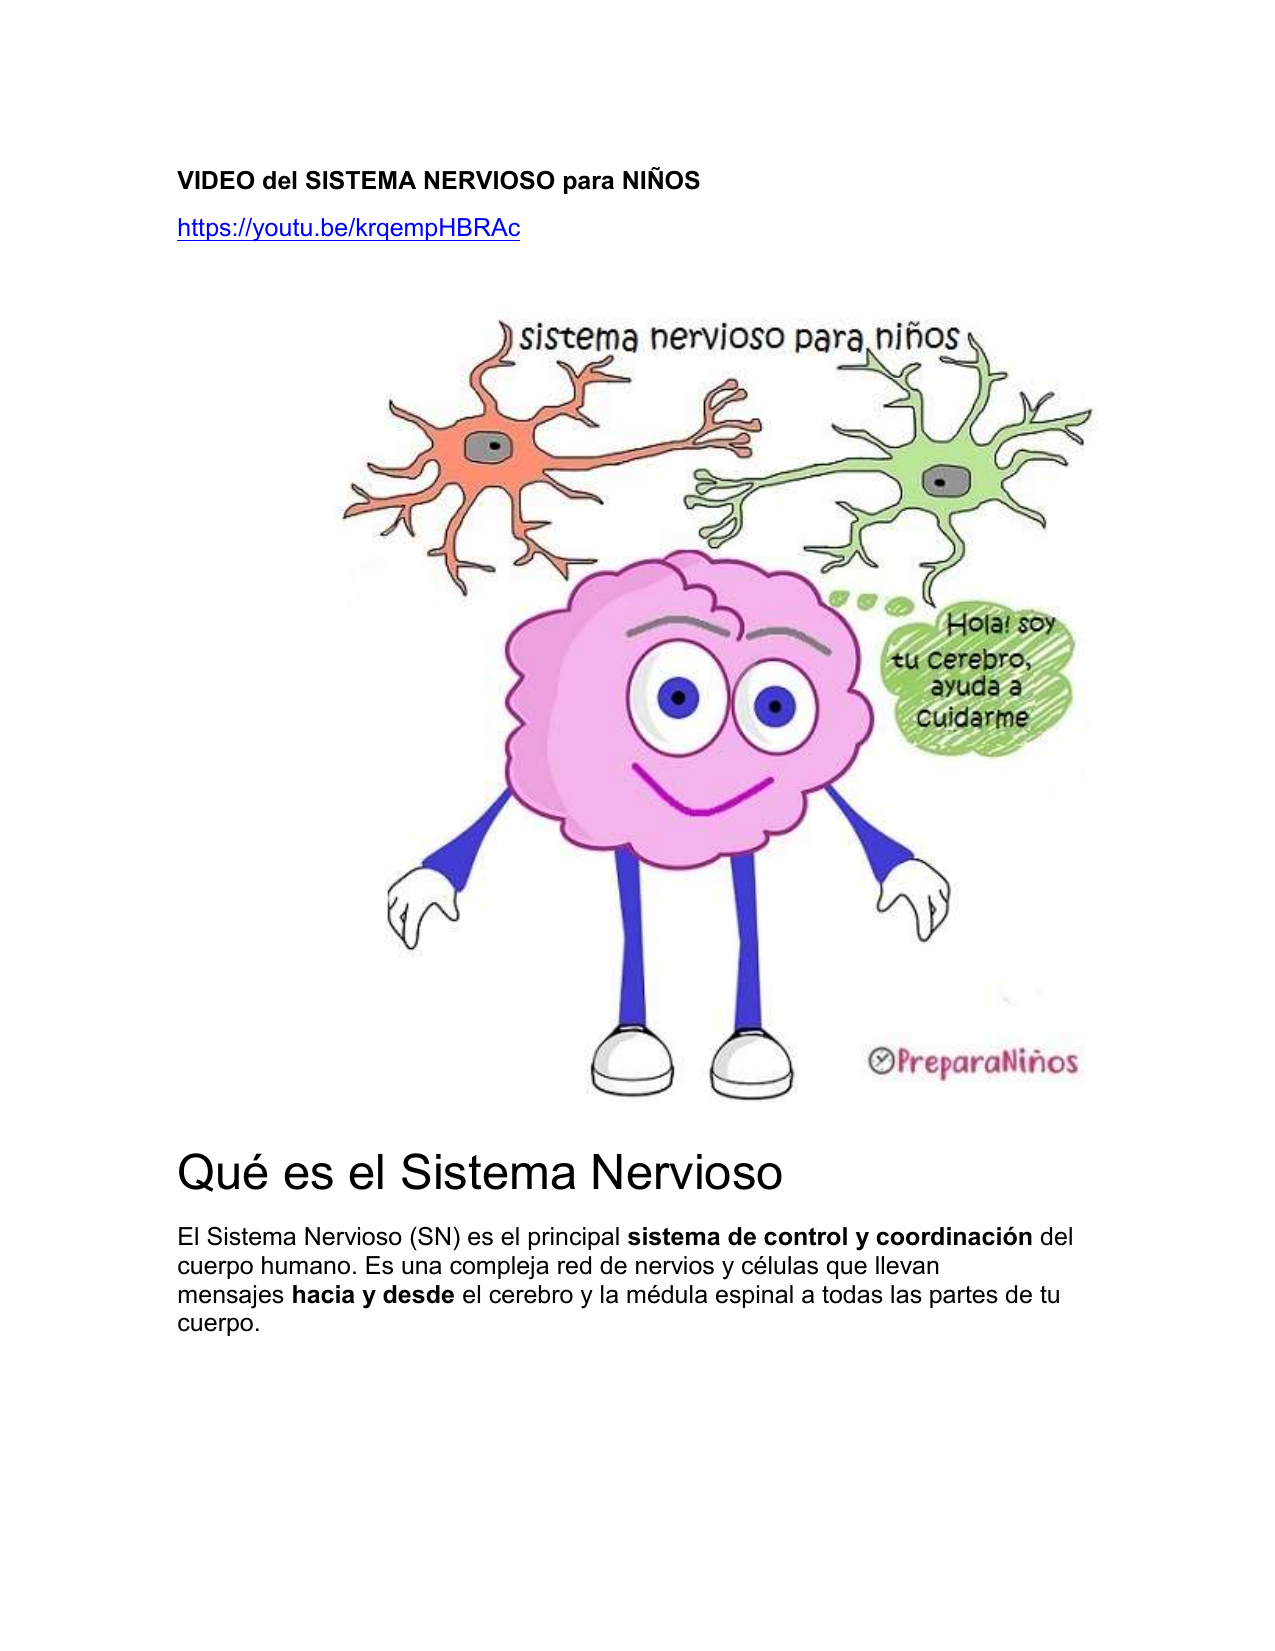 El sistema nervioso. órganos y funciones